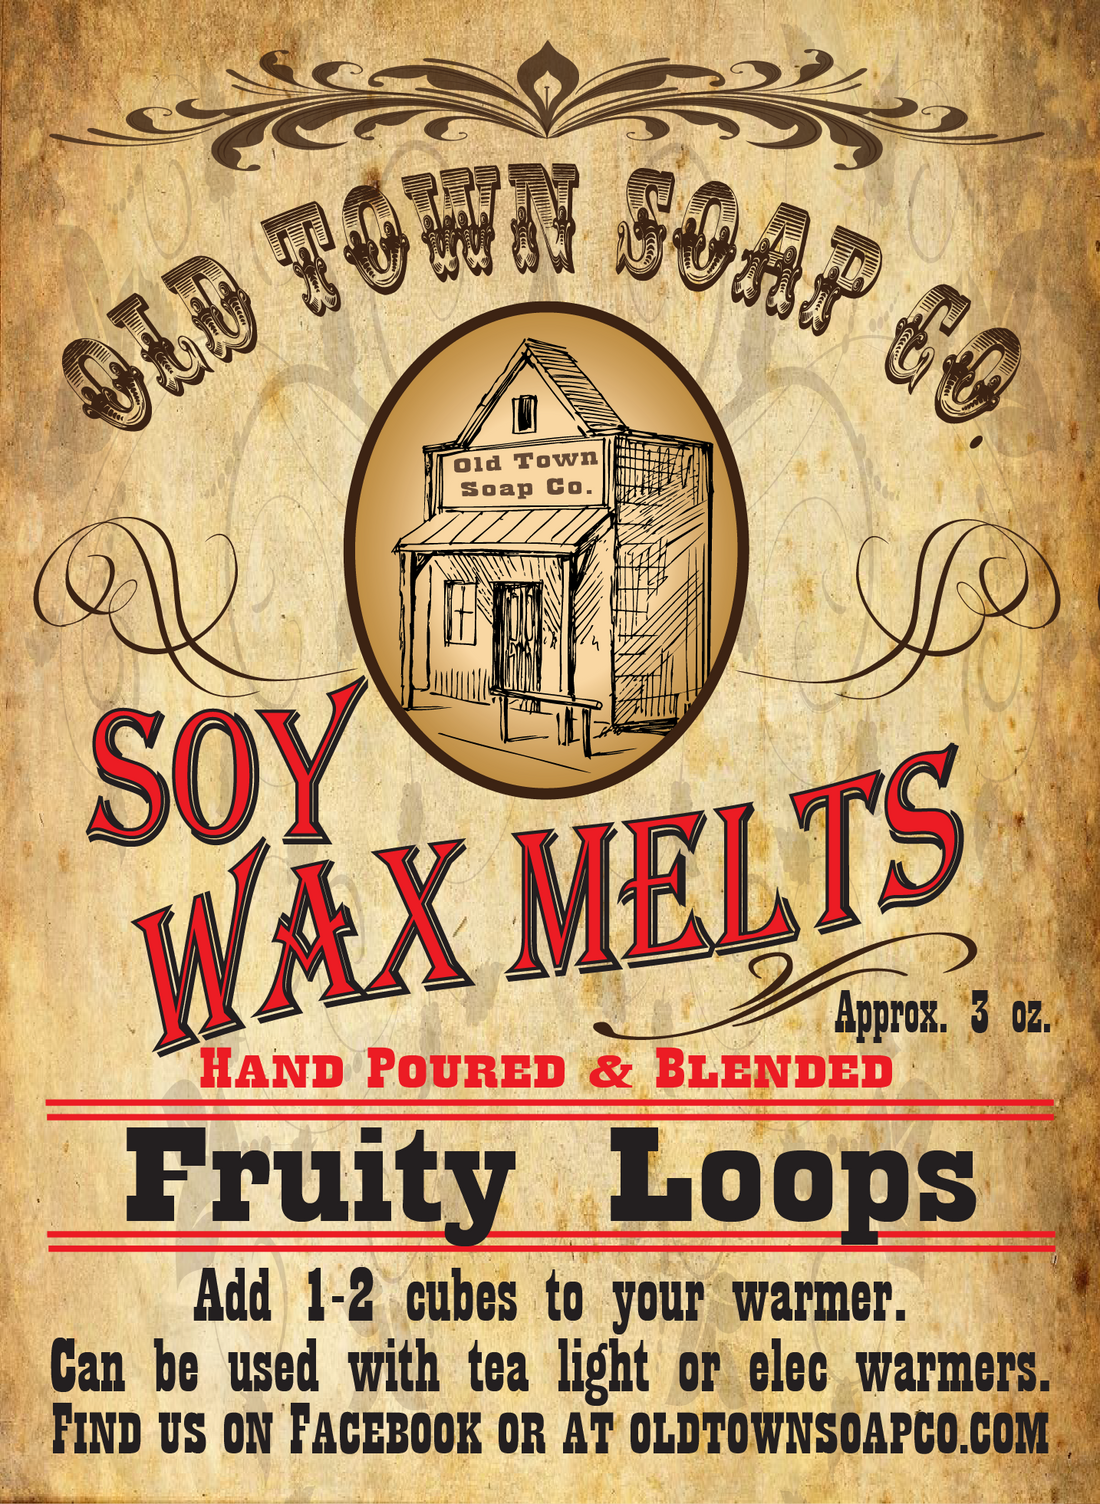 Fruity Loops Wax Melts